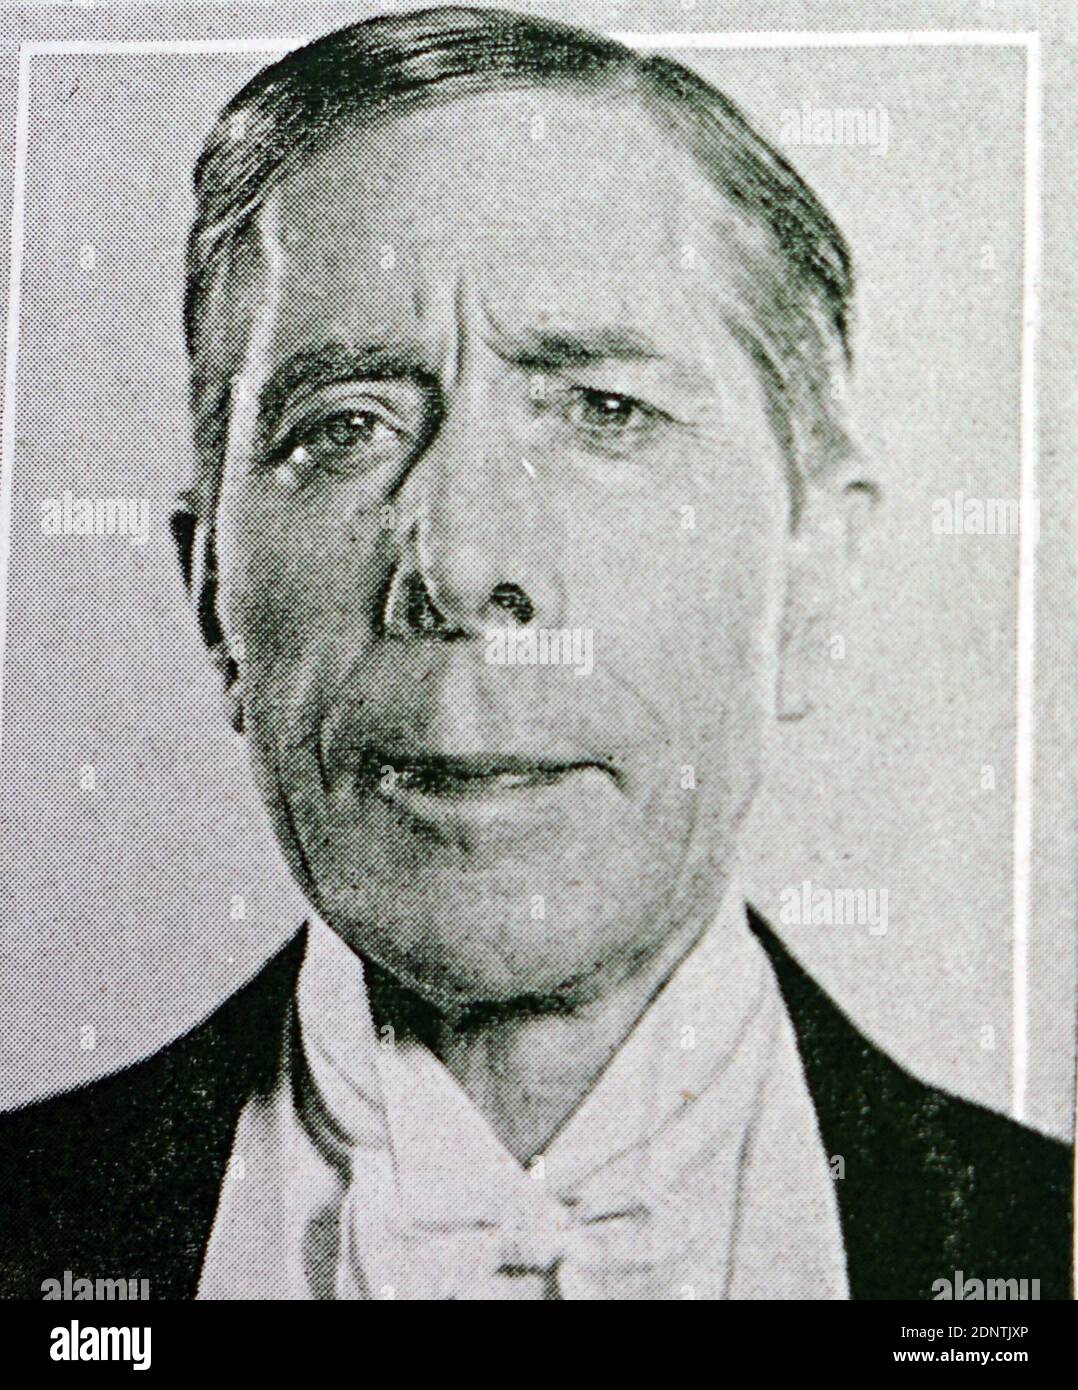 Foto von George Arliss (1868-1946) ein englischer Schauspieler, Autor, Dramatiker und Filmemacher. Stockfoto